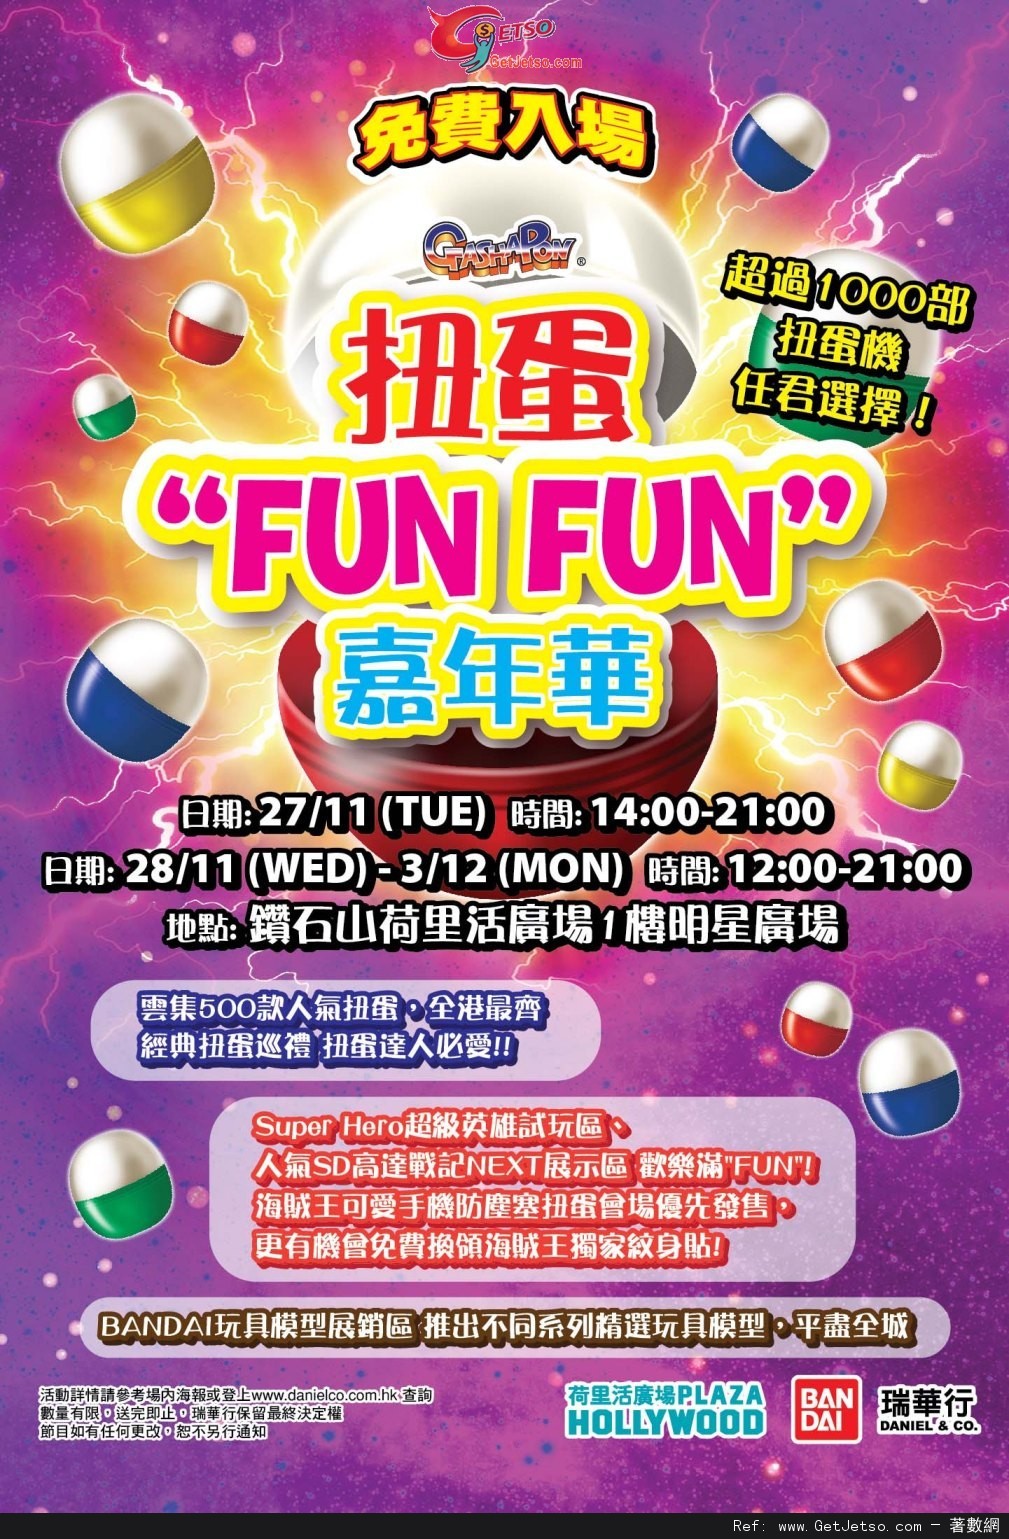 扭蛋"Fun Fun"嘉年華免費入場@荷里活廣場(至12年12月3日)圖片1